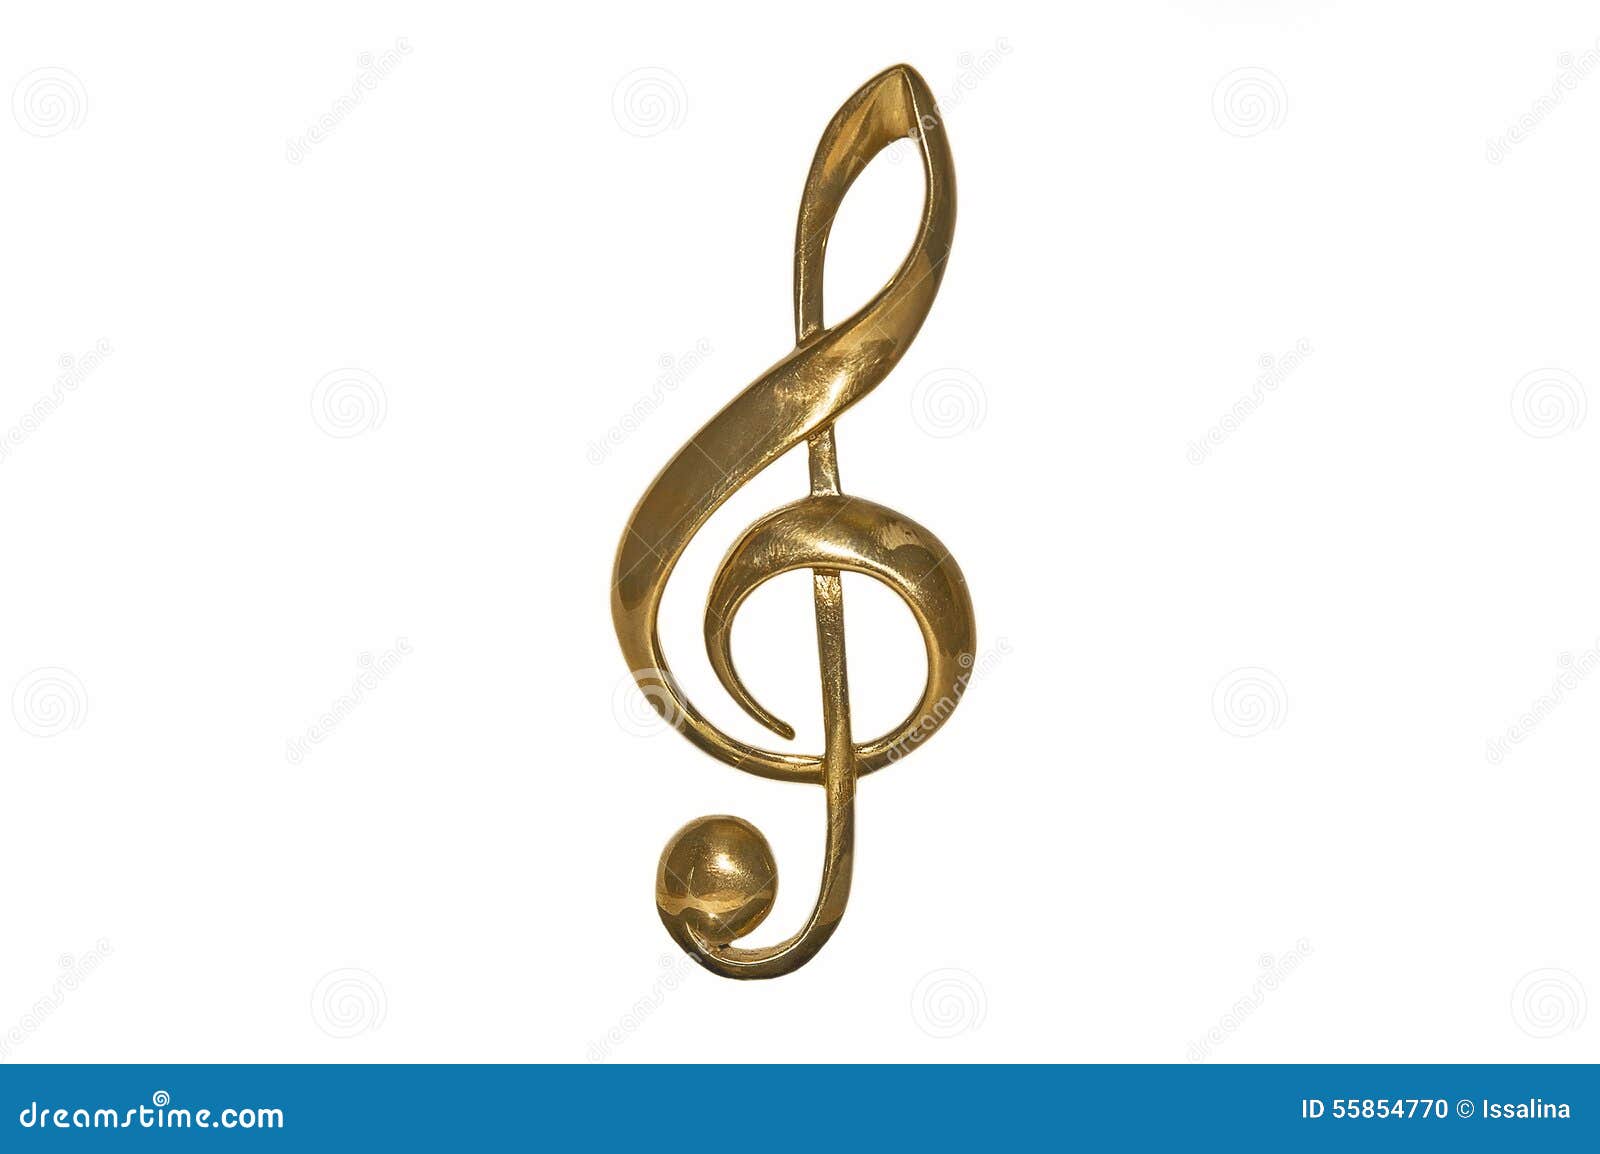 golden treble clef